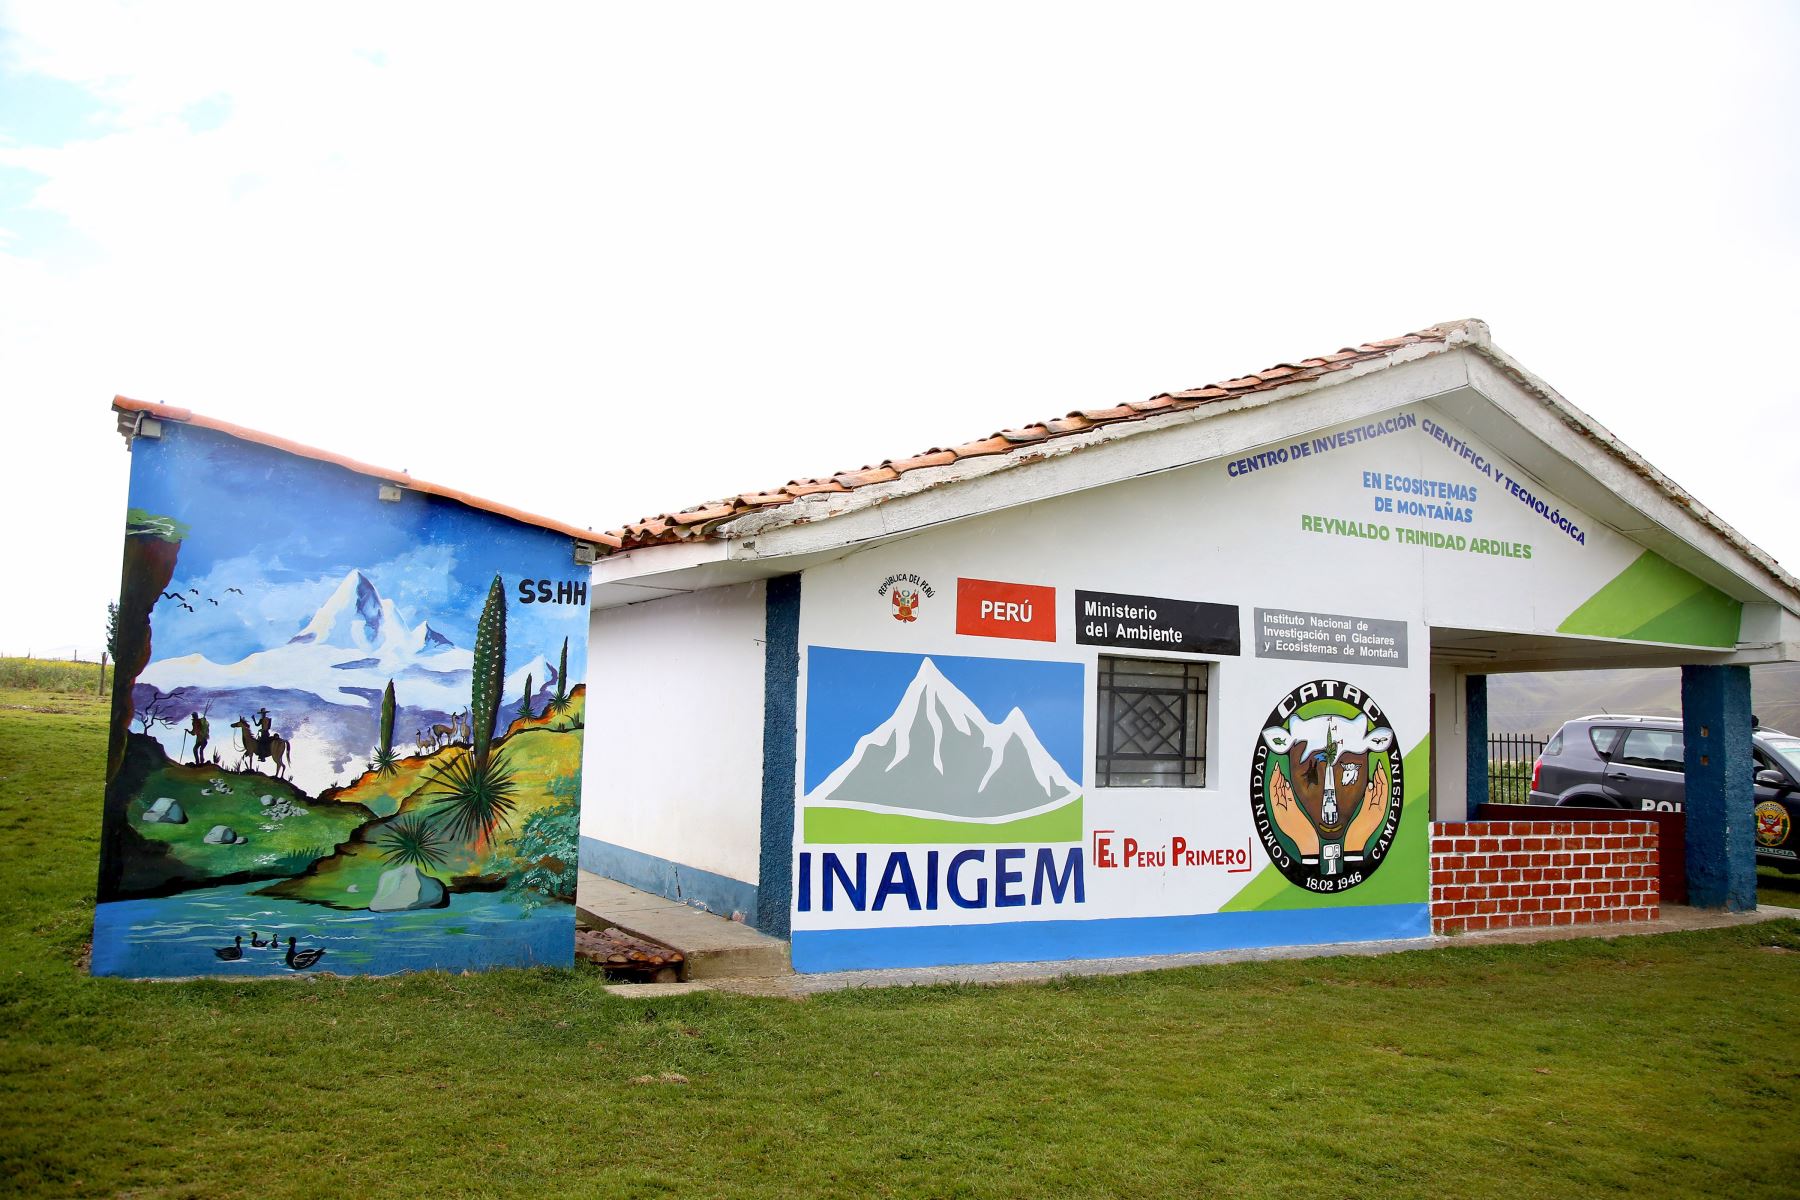 Minam inaugura Centro de Investigación Científica y Tecnológica en Ecosistemas de Montaña (Cictem), que permitirá estudiar los ecosistemas de alta montaña en el Perú. ANDINA/Difusión